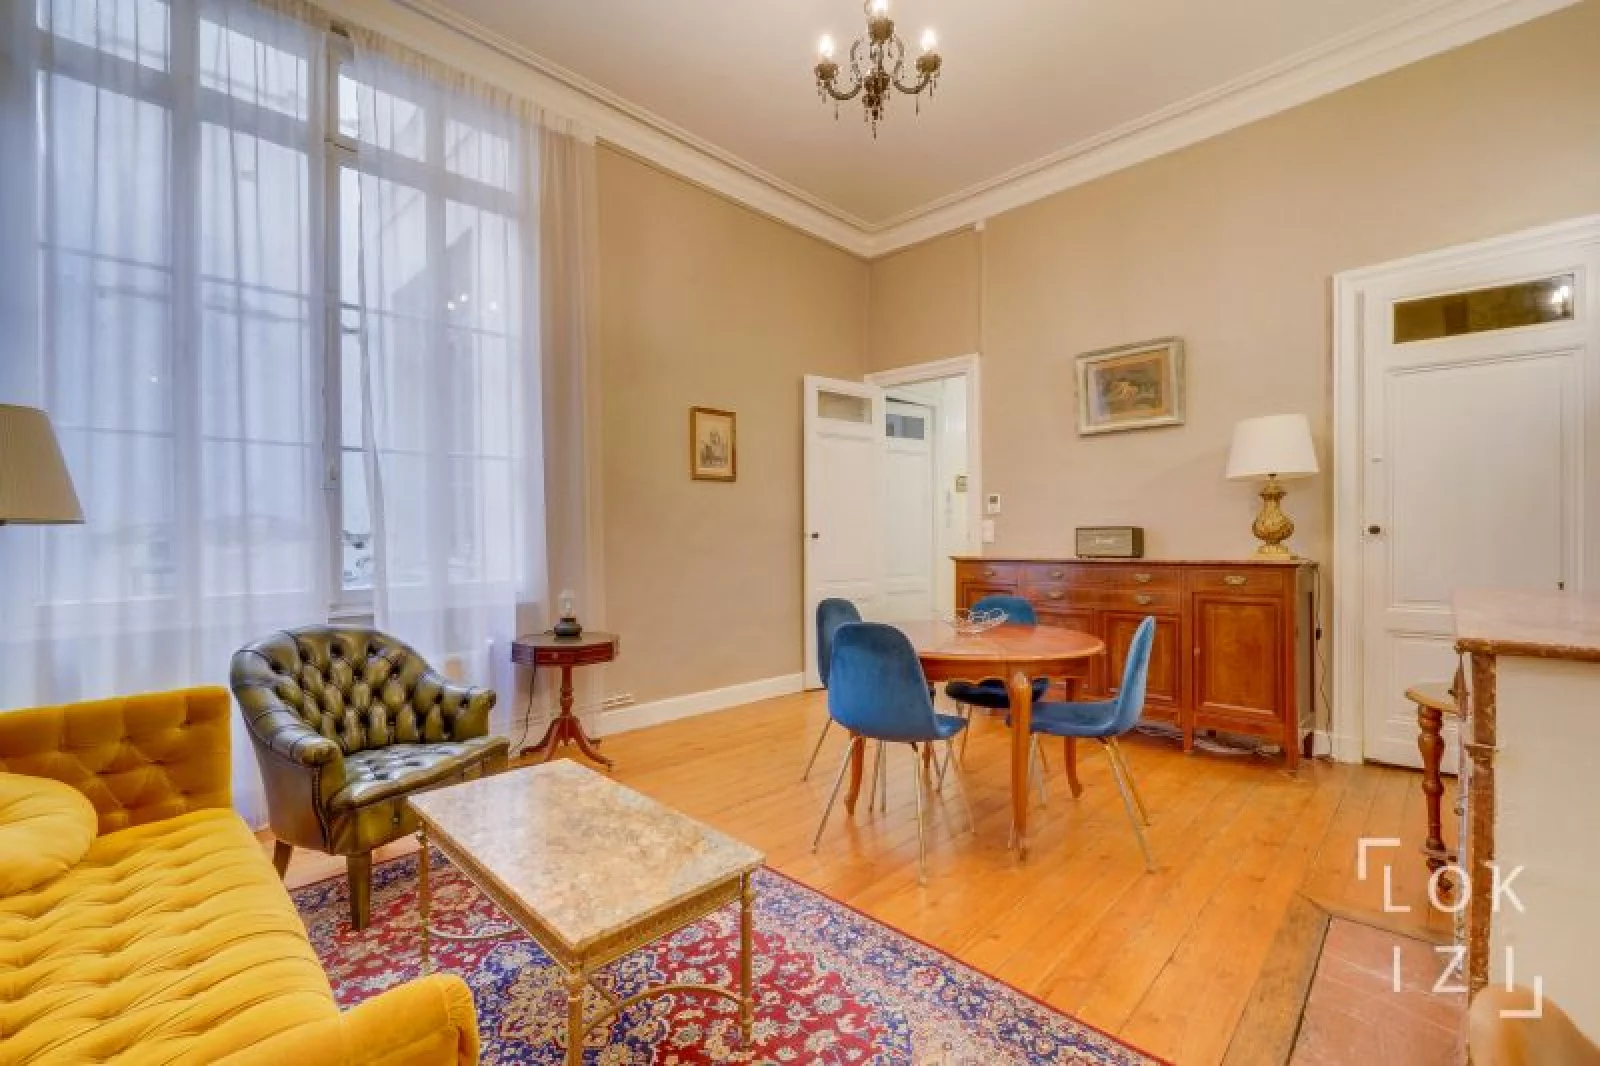 Location appartement meublé 3 pièces 73m² (Bordeaux centre / Gambetta)